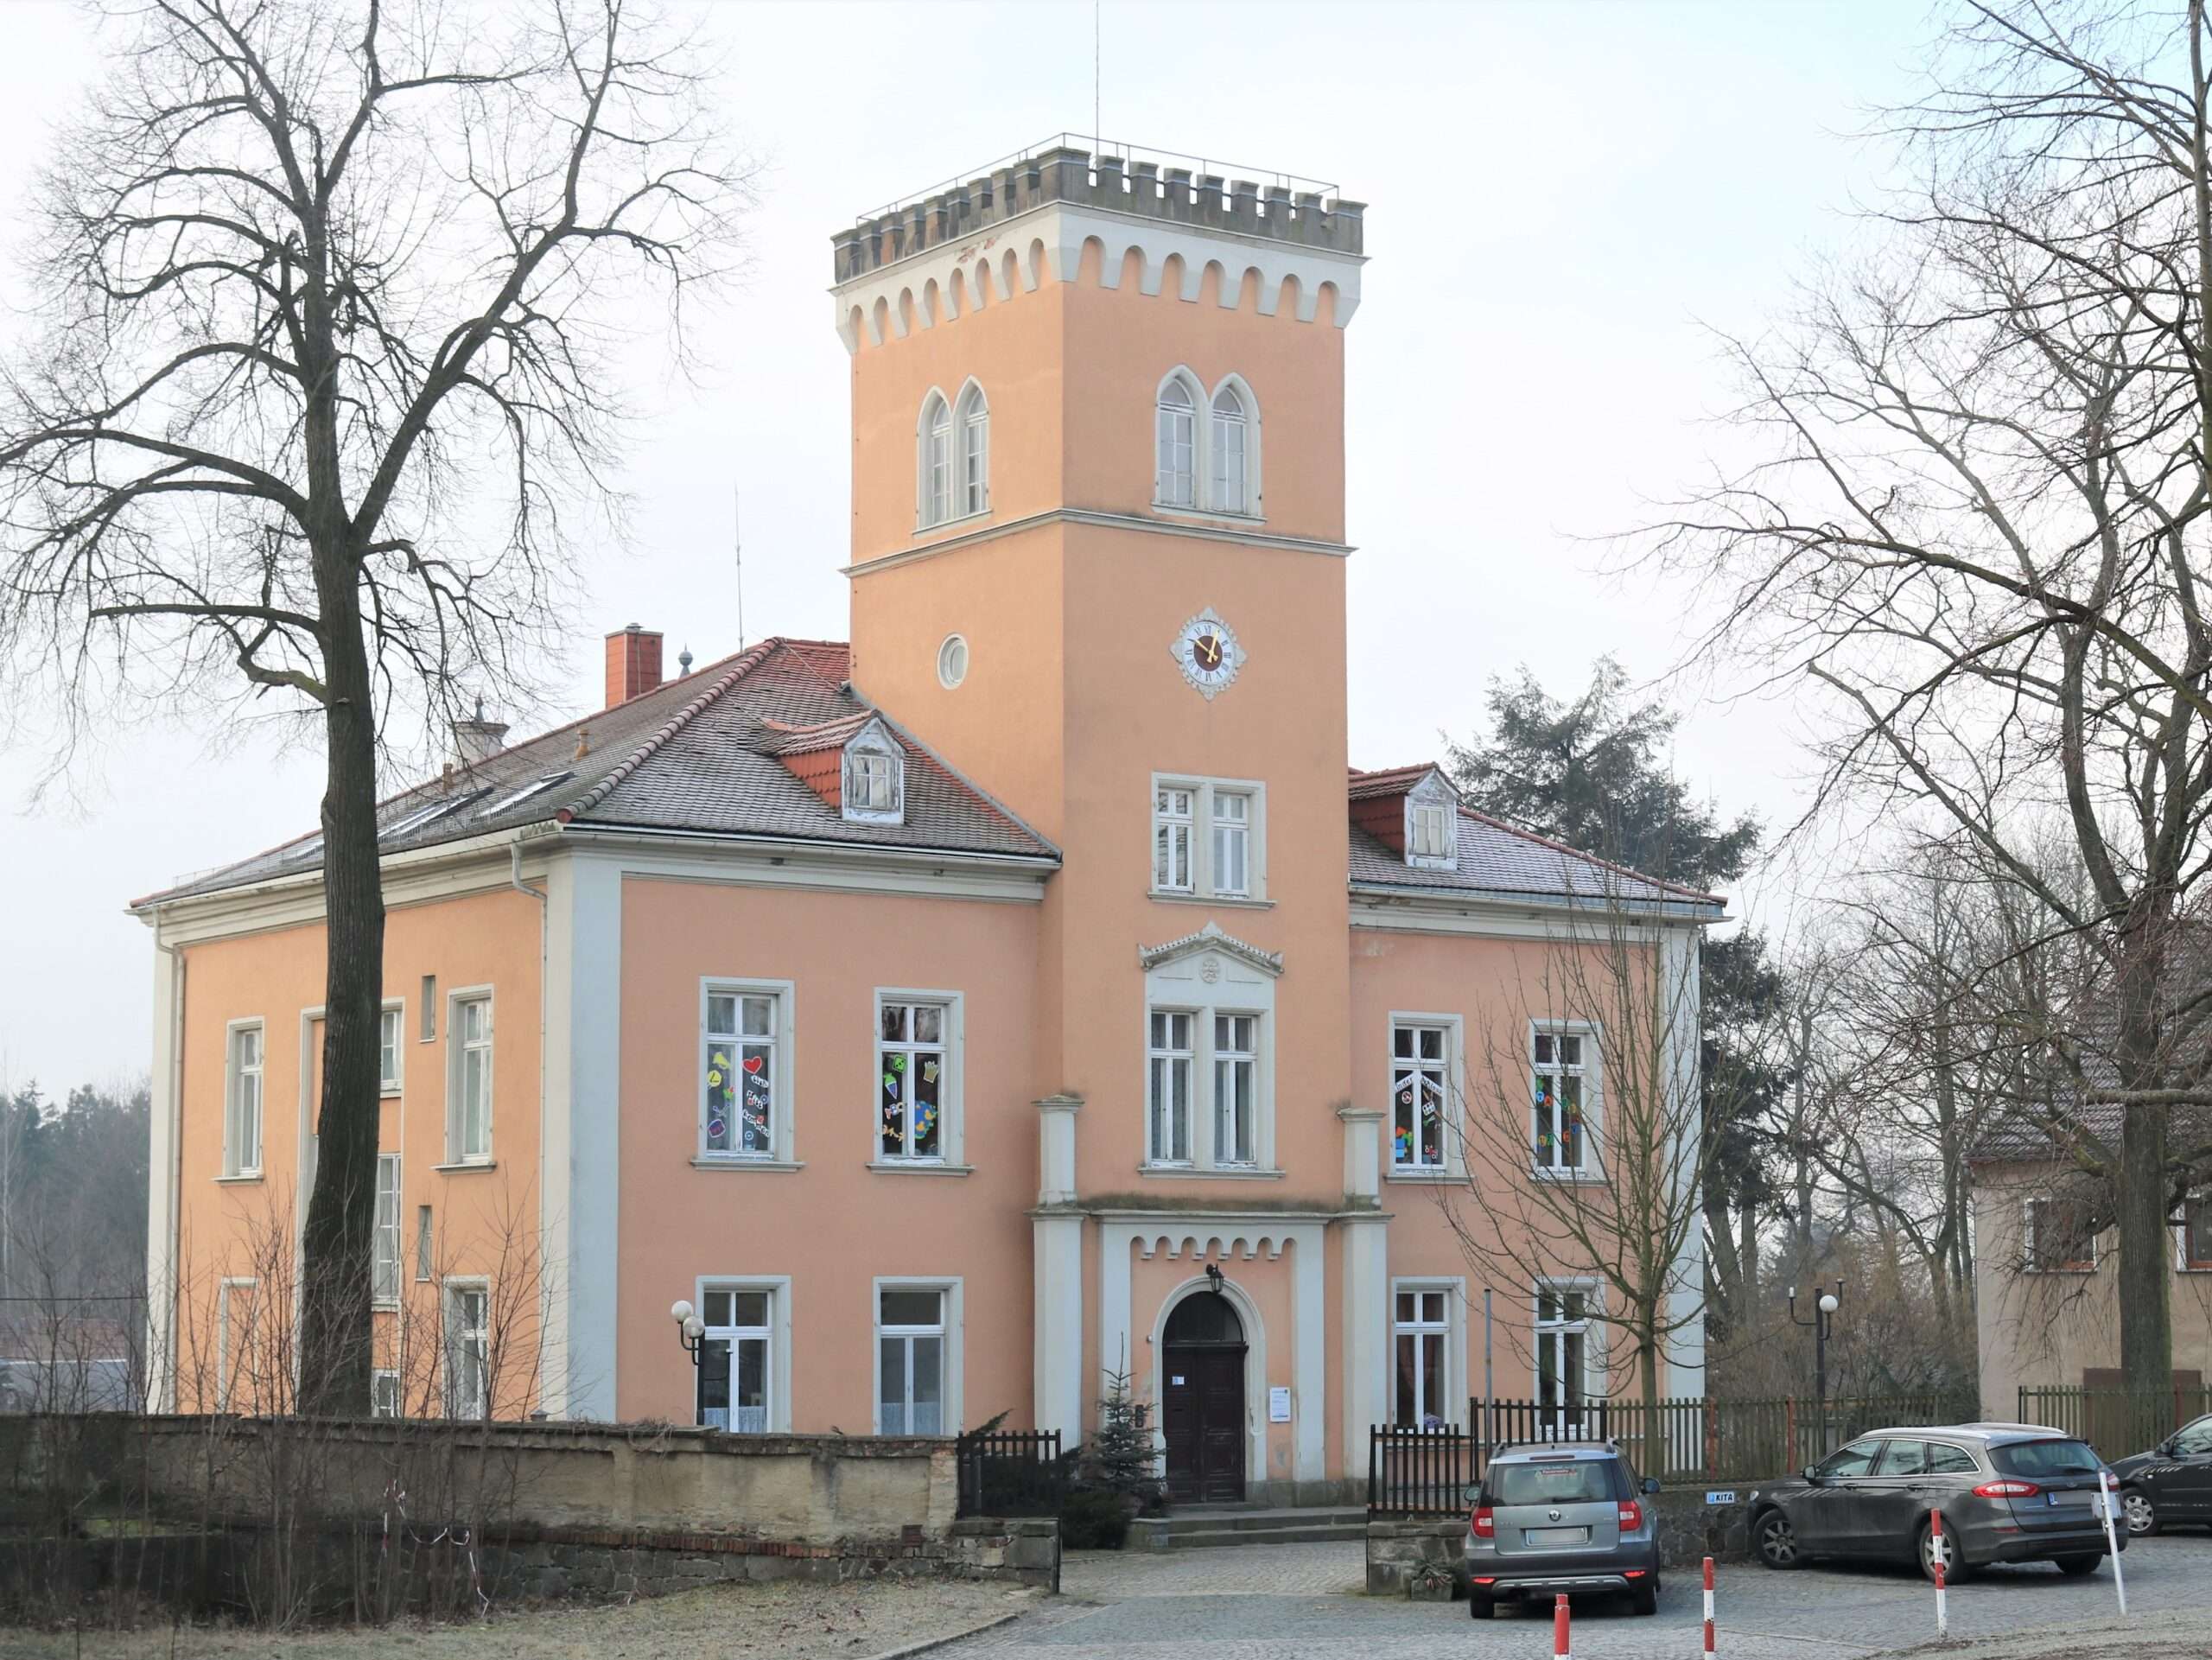 Referenz: Herrenhaus Ottenhain verkauft im September 2022